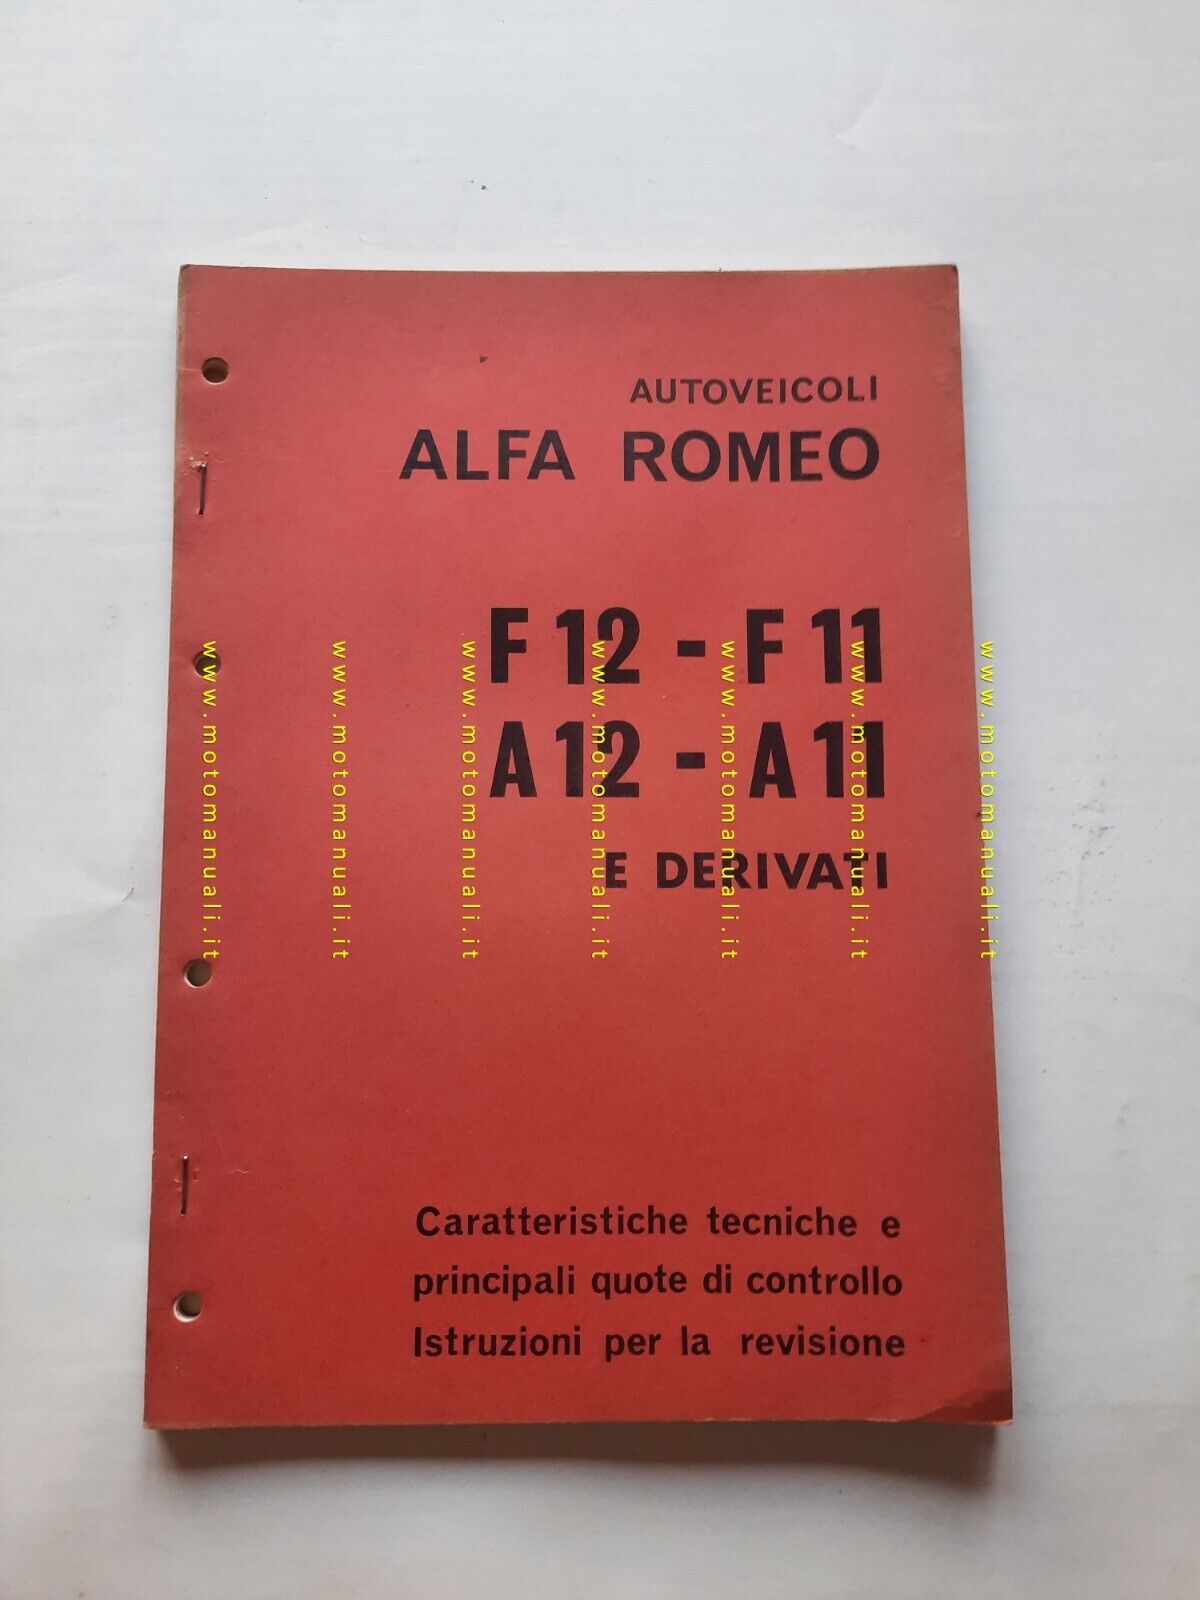 Alfa Romeo F11-12 A11-12 1973 manuale officina caratteristiche tecniche  